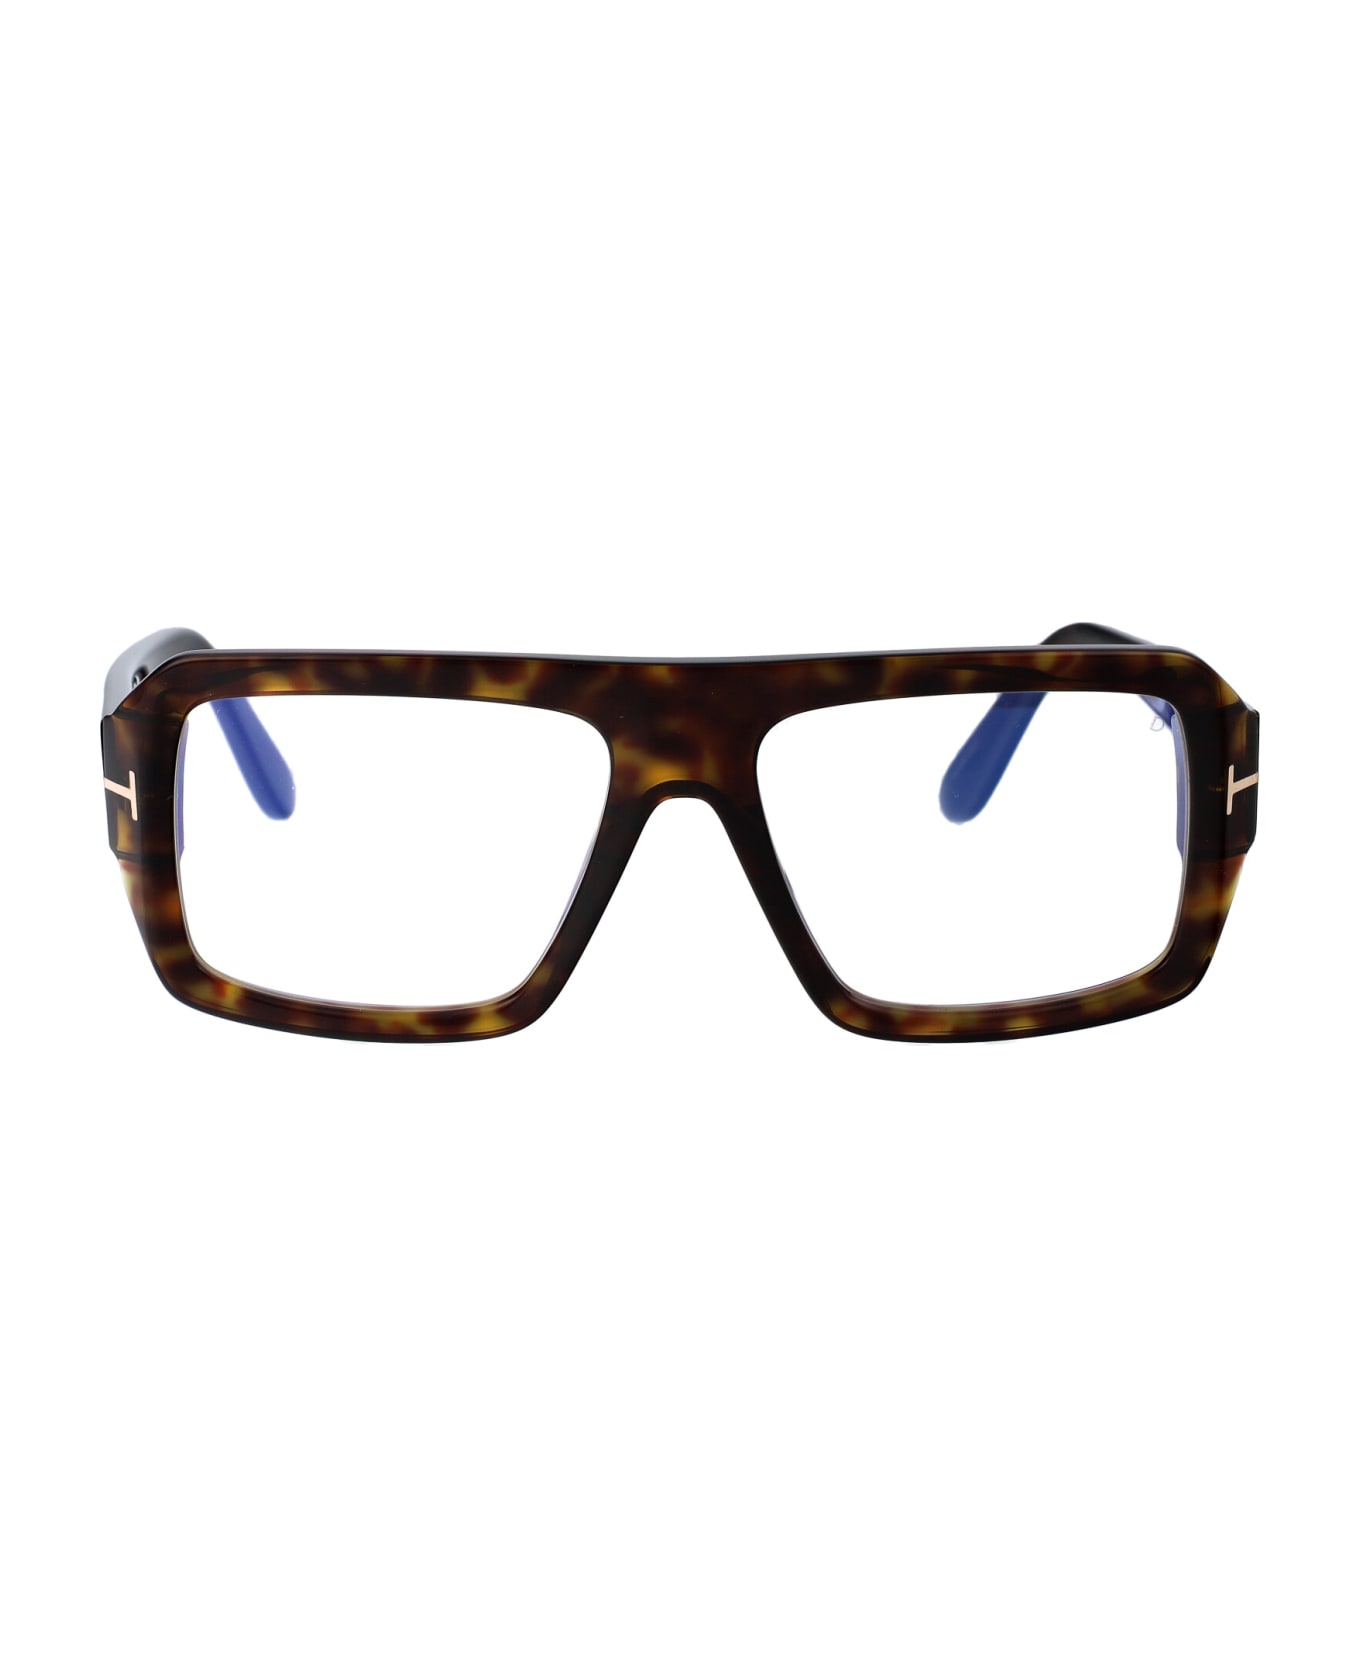 Tom Ford Eyewear Ft5903-b Glasses - 052 Avana Scura